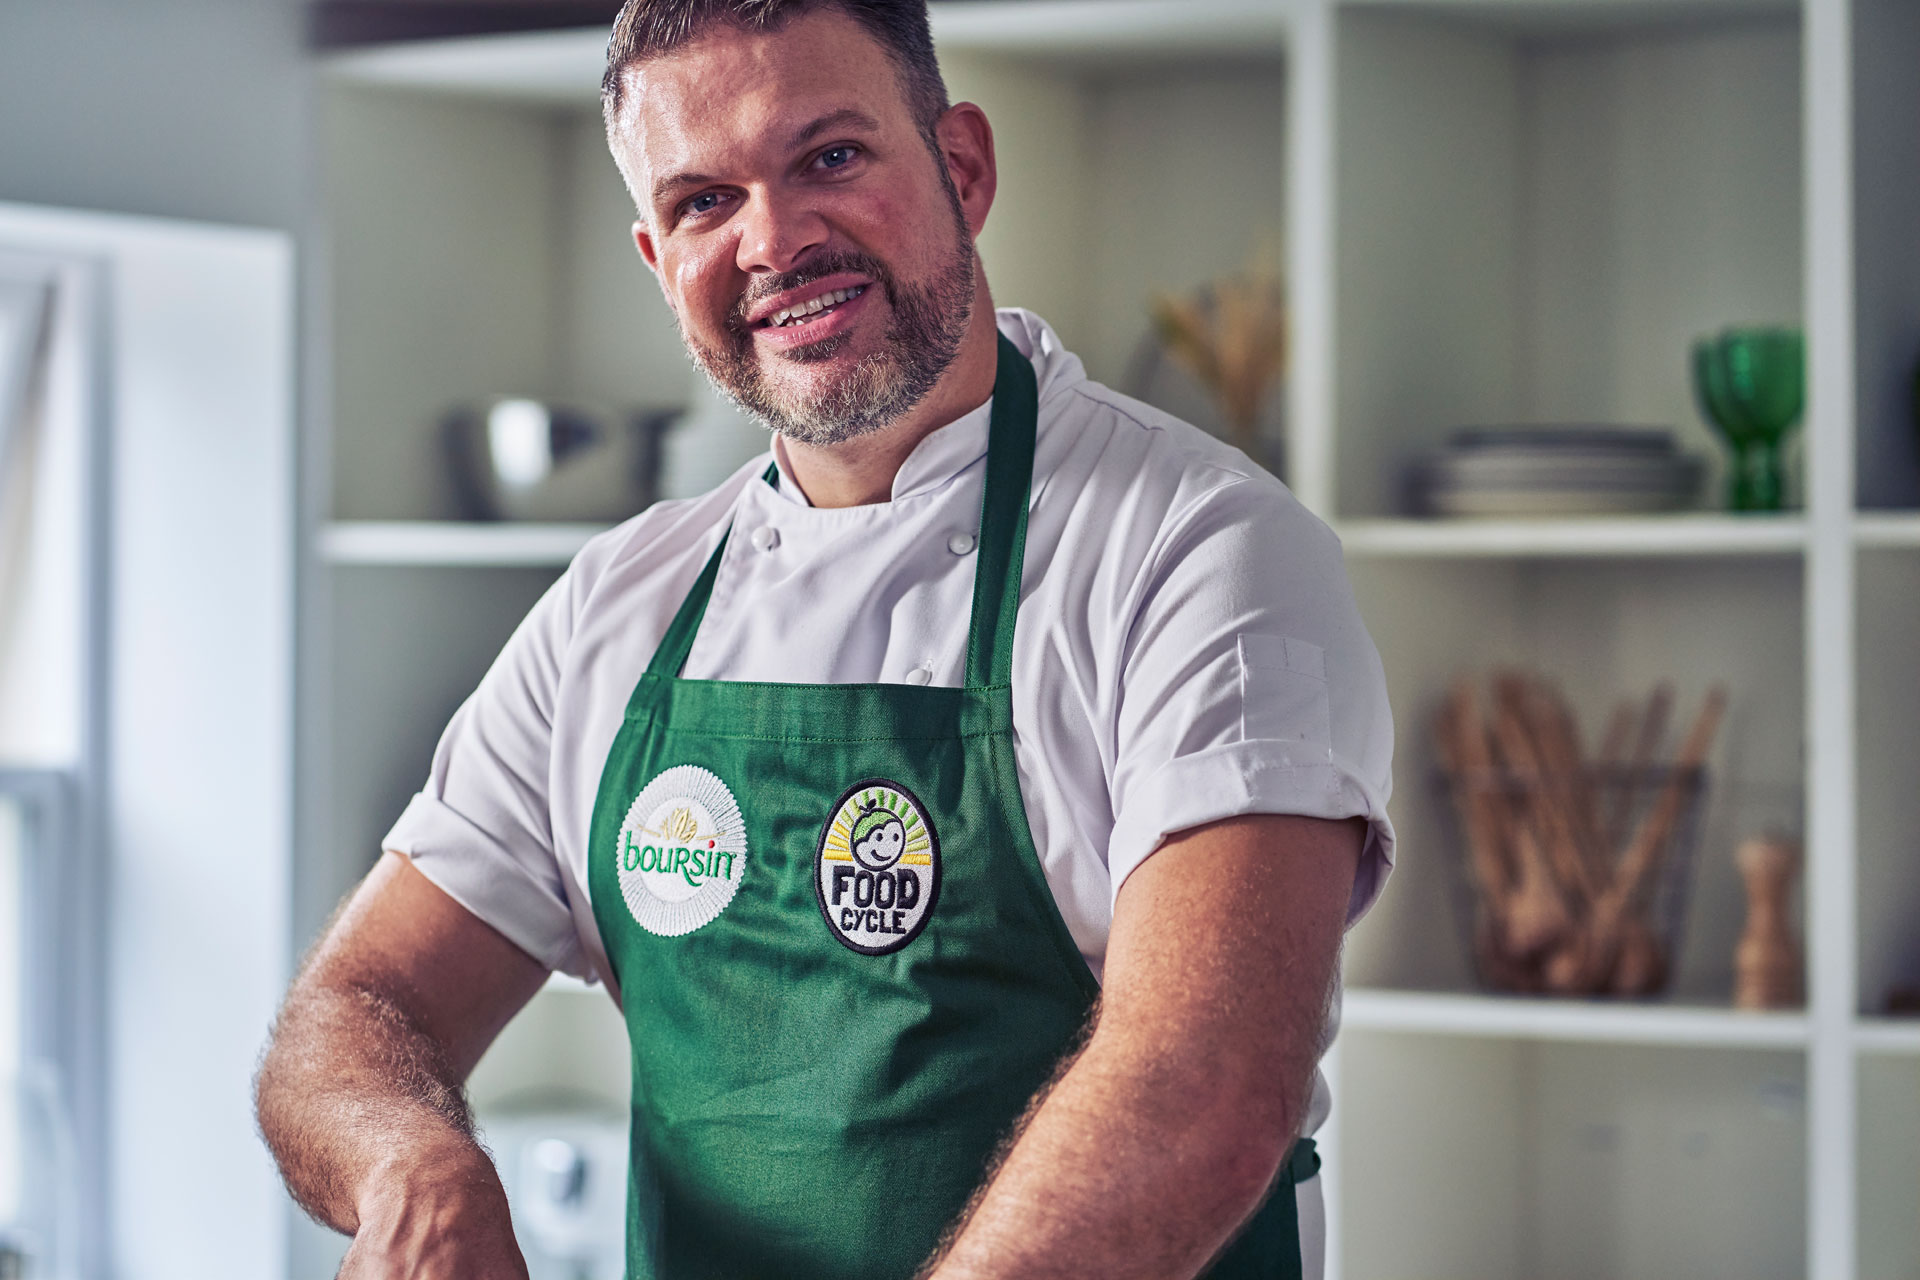 Chef Kenny Tutt on Cutting Food Waste